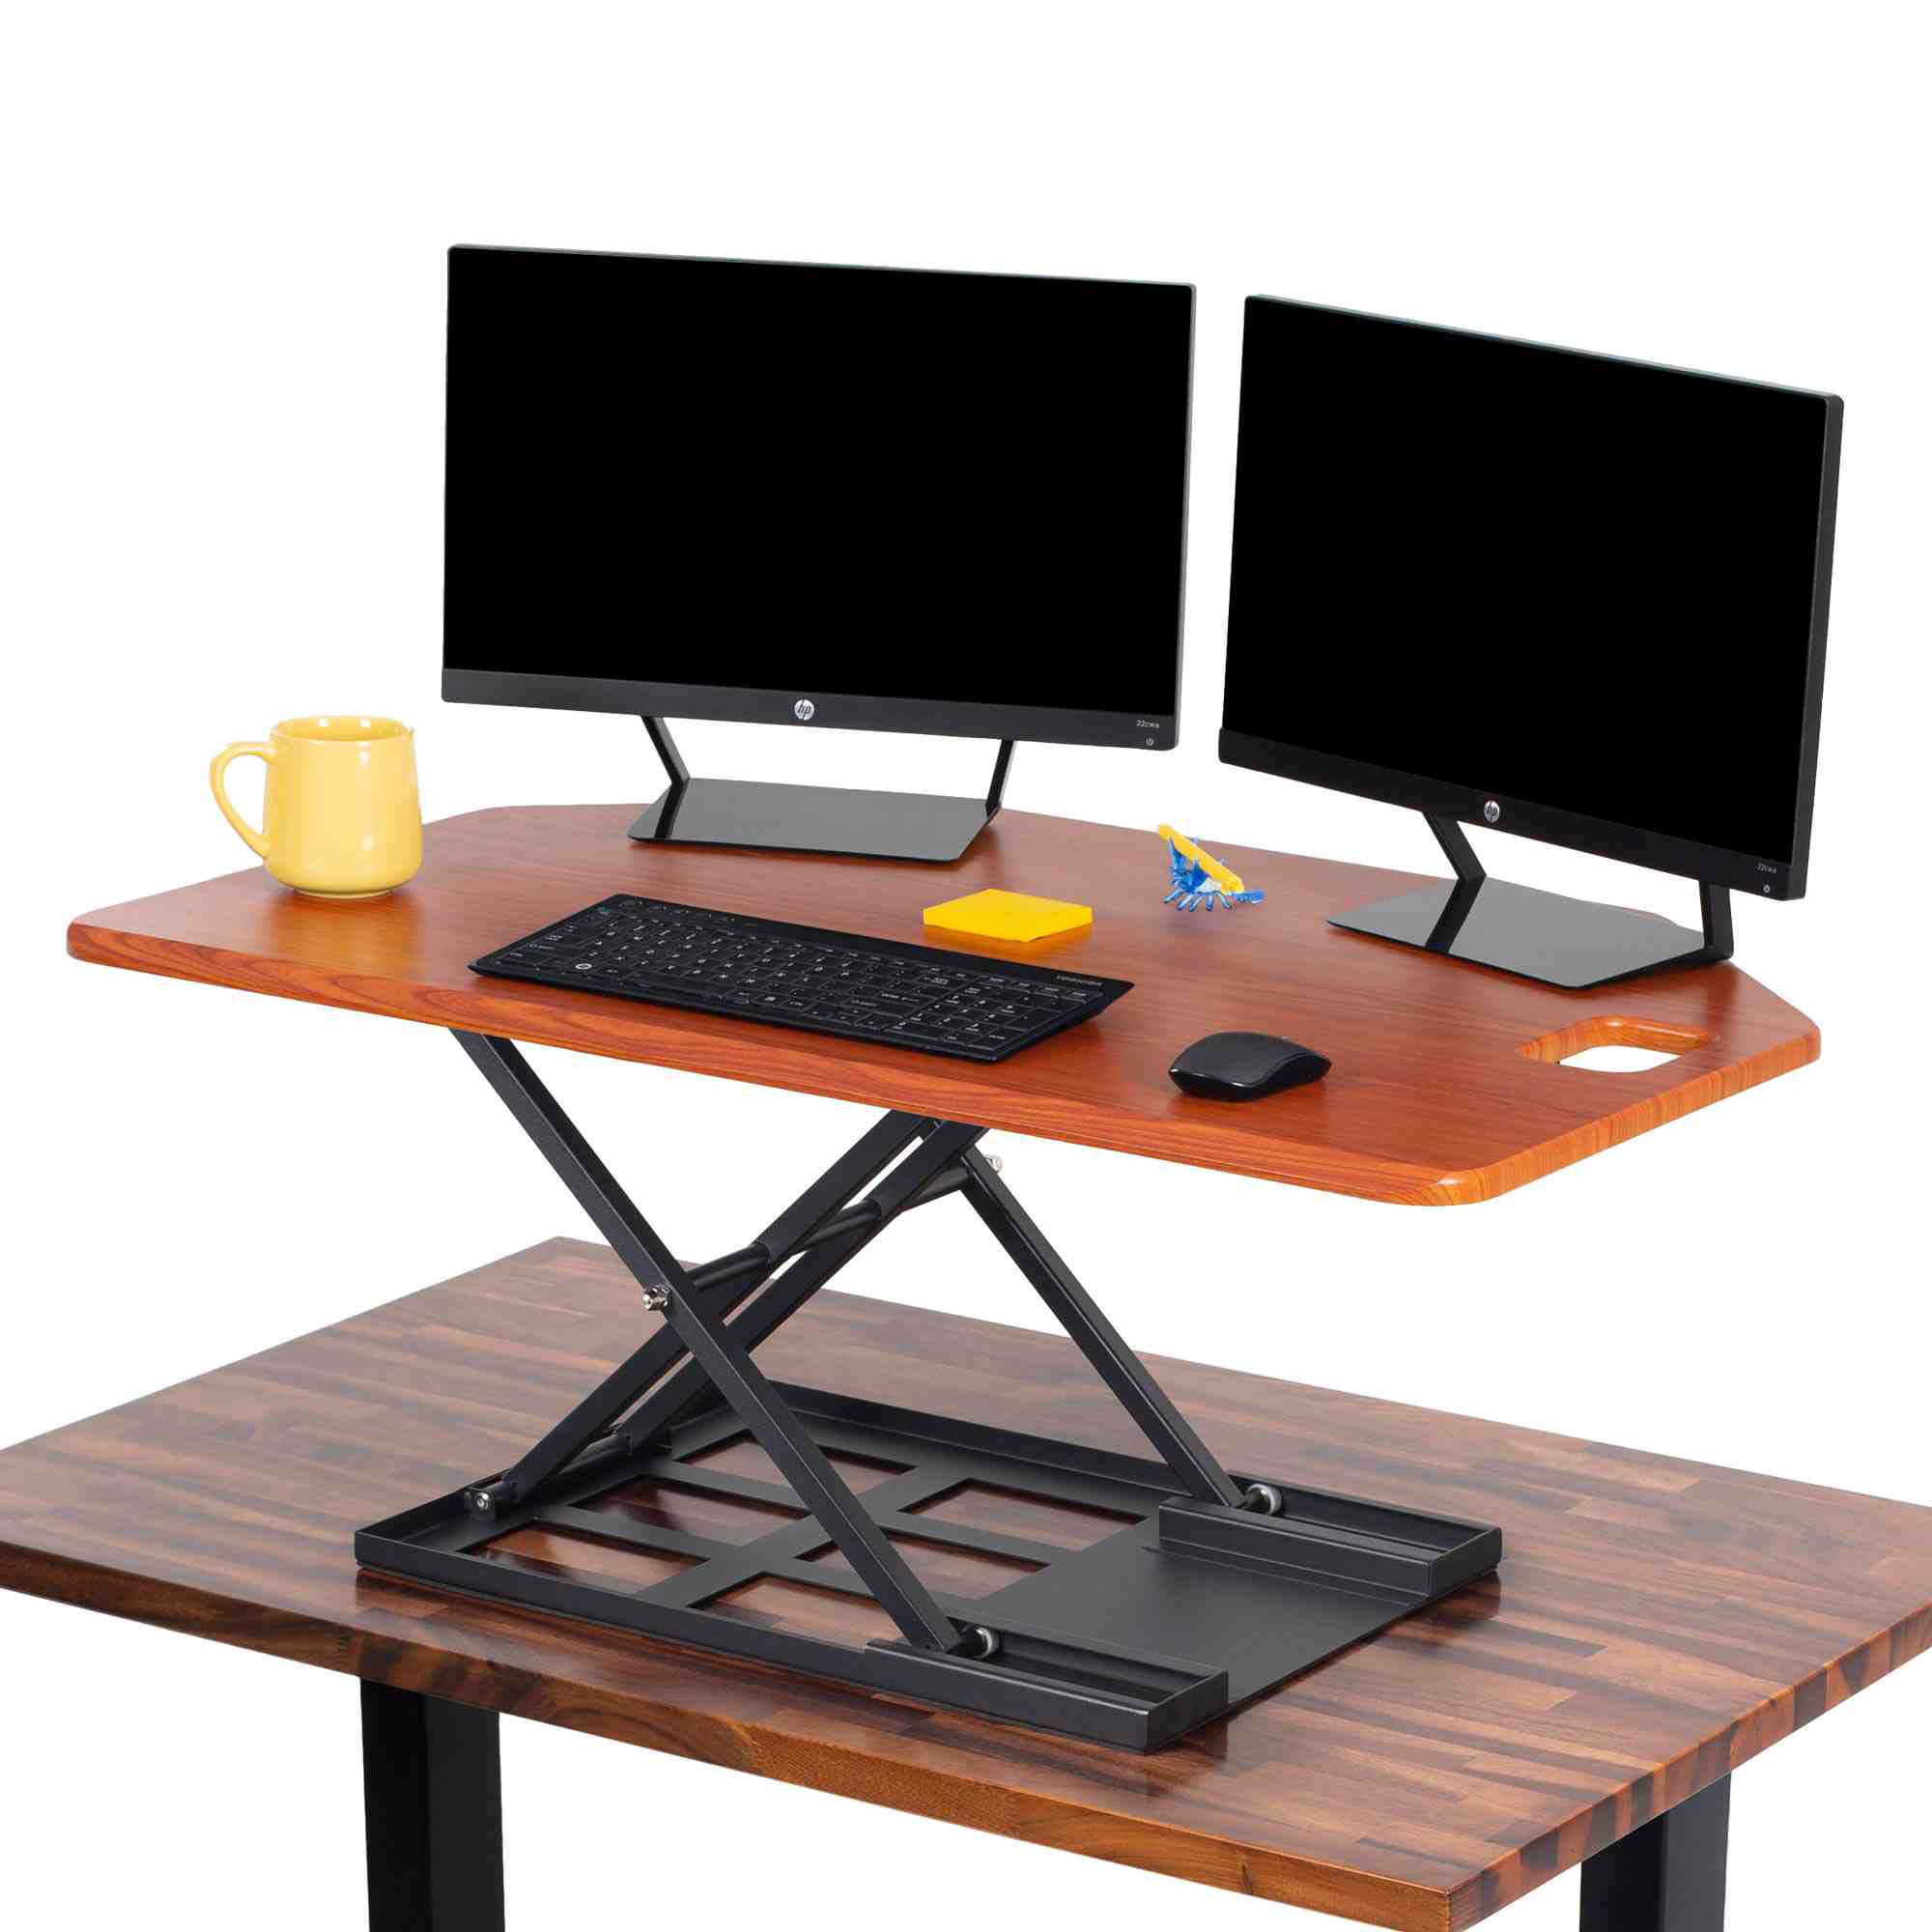  Halter Ergonomic Office Chair for Home Office Desk